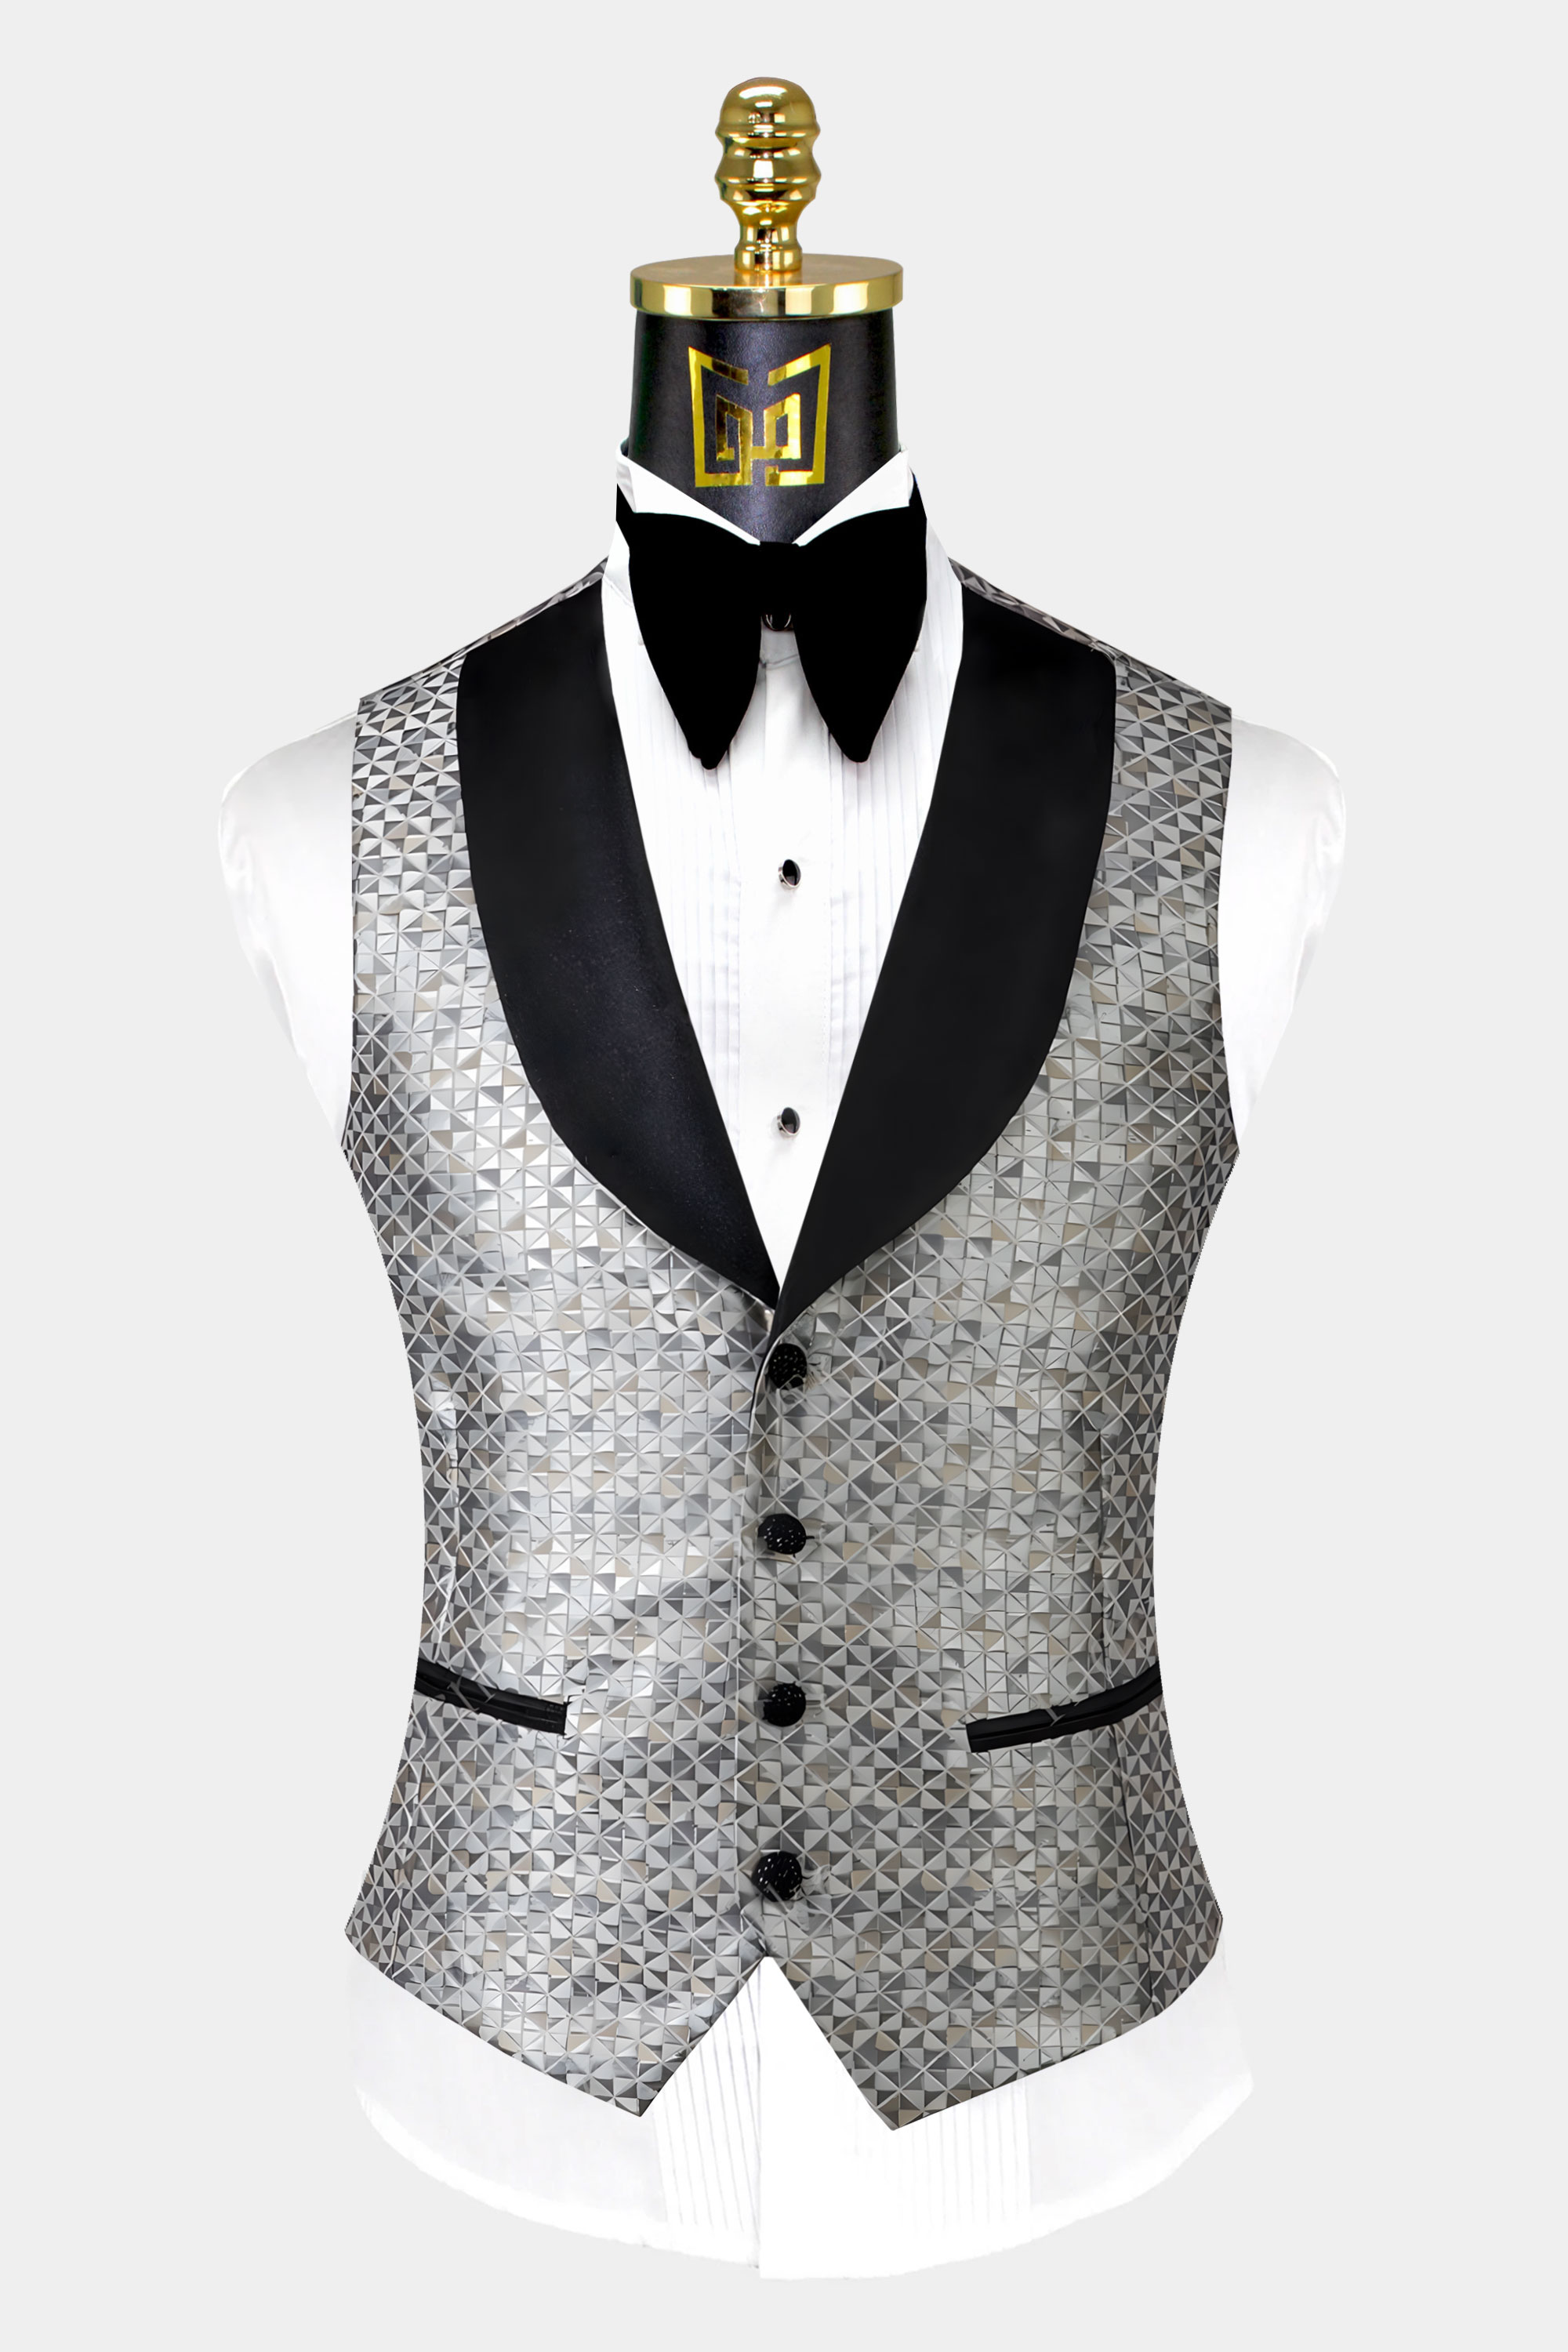 Silver-Grey-Tuxedo-Vest-from-Gentlemansguru.com